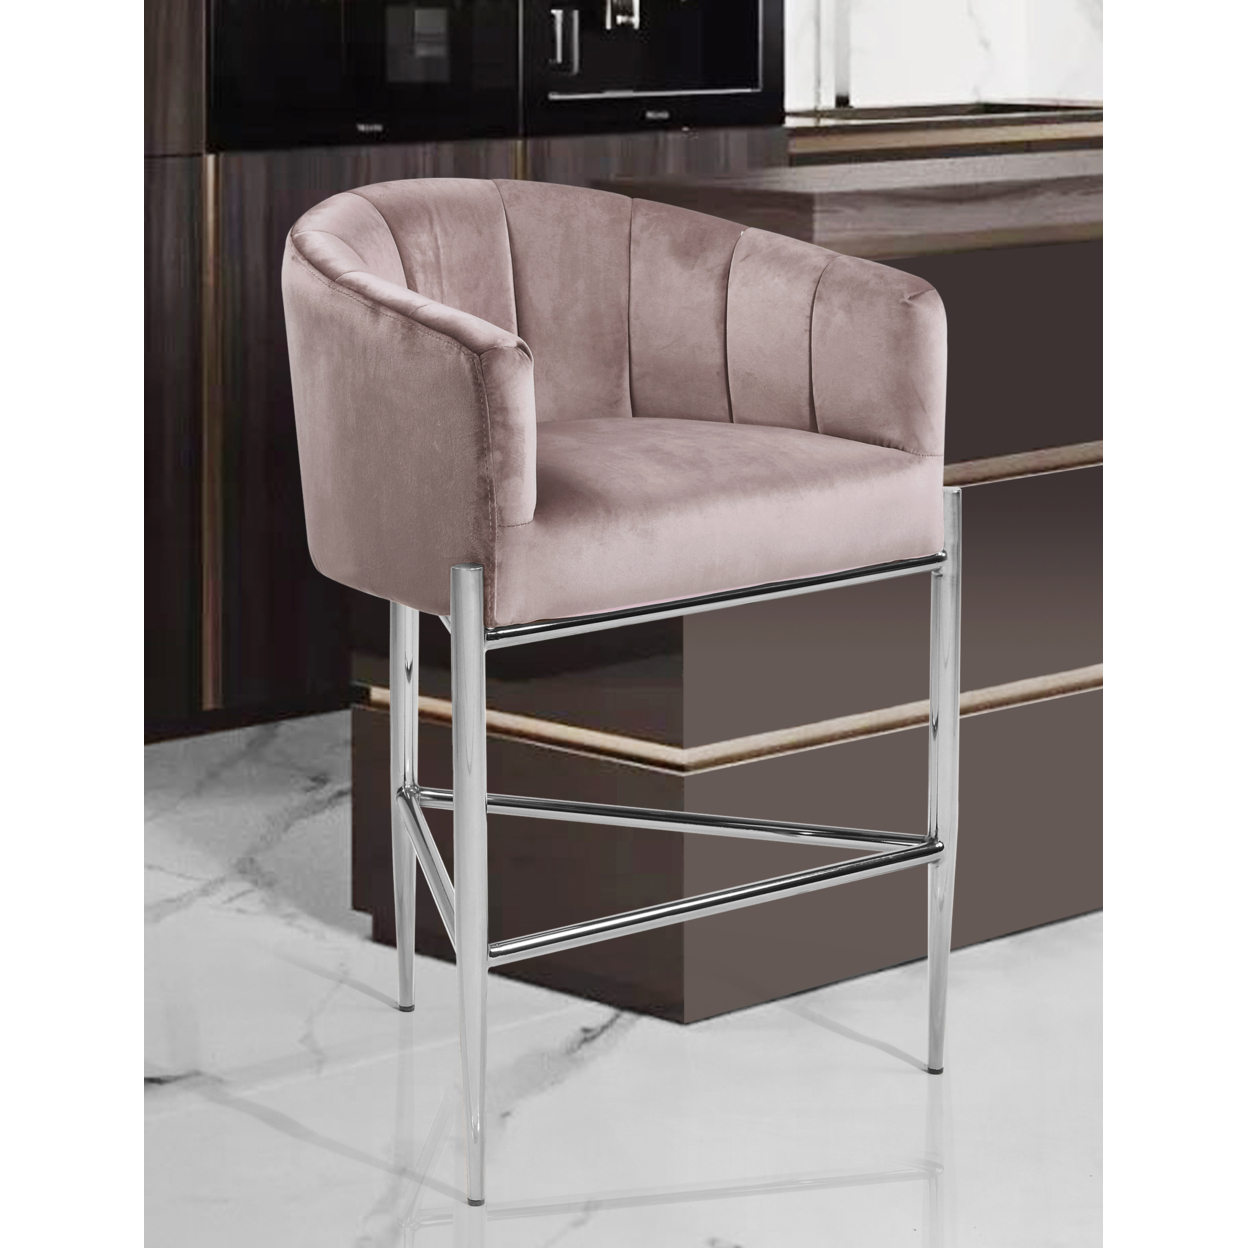 Iconic Home Ardee Counter Stool Chair Velvet Upholstered Shelter Arm Shell Design 3 Legged Chrome Tone Solid Metal Base - Blush